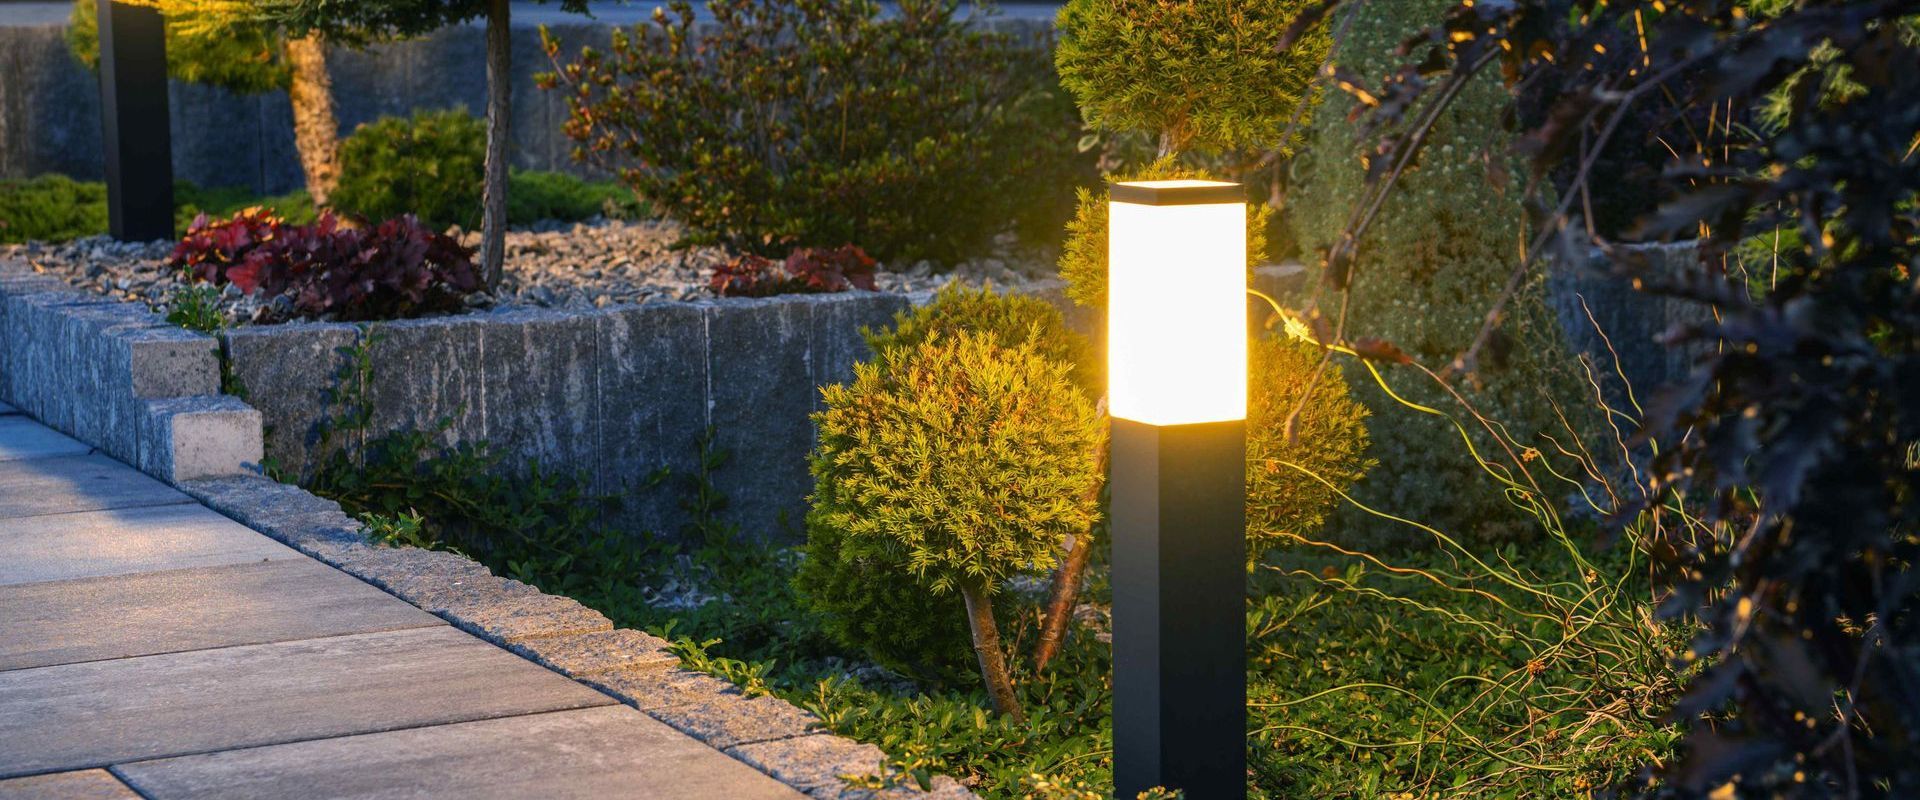 Lamps Along Pathway Through Garden